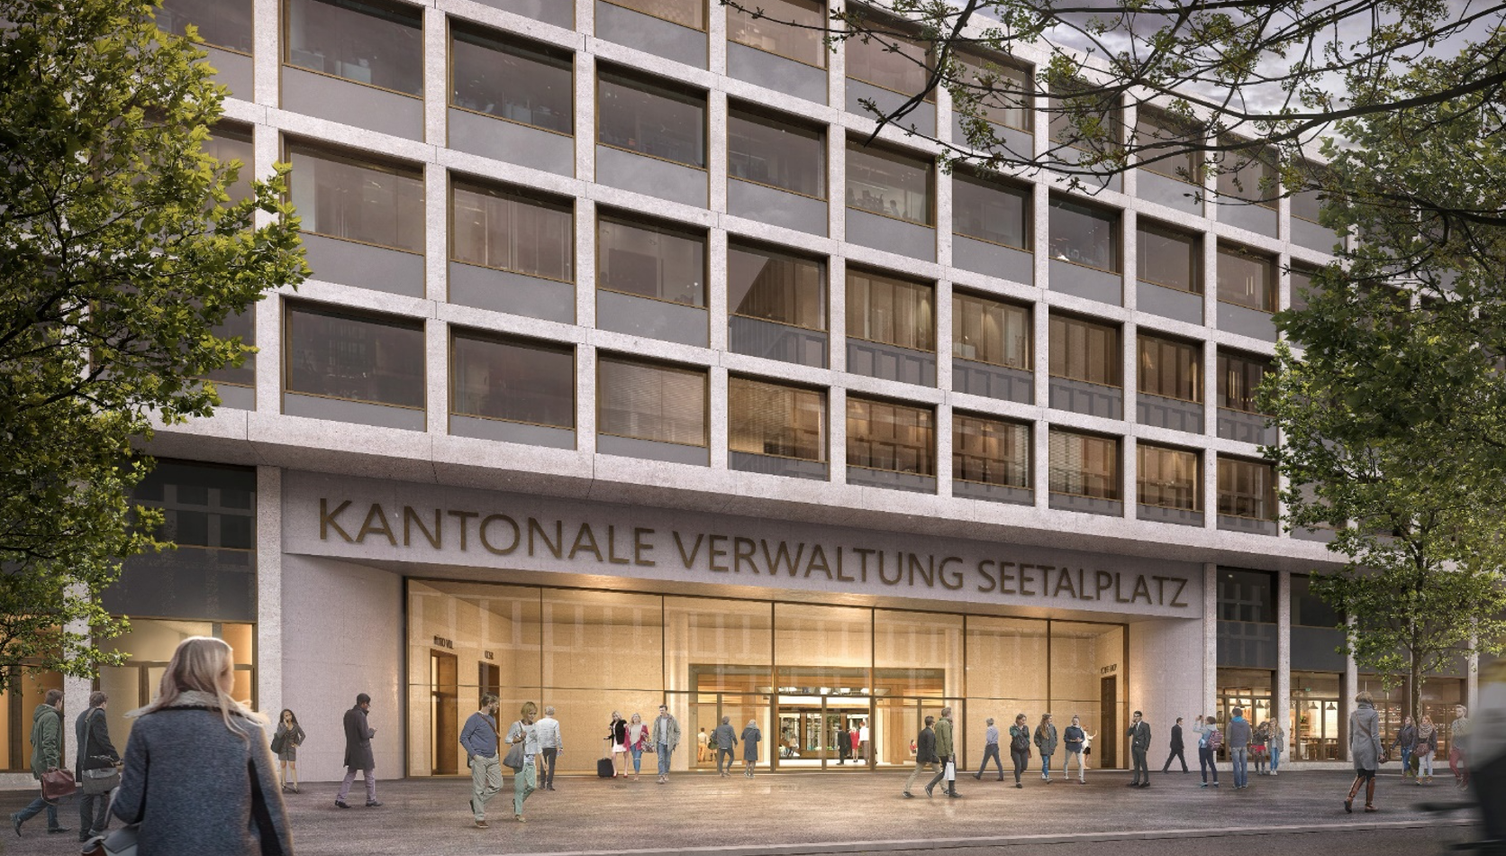 Kantonale Verwaltung am Seetalplatz: Baubewilligung erteilt